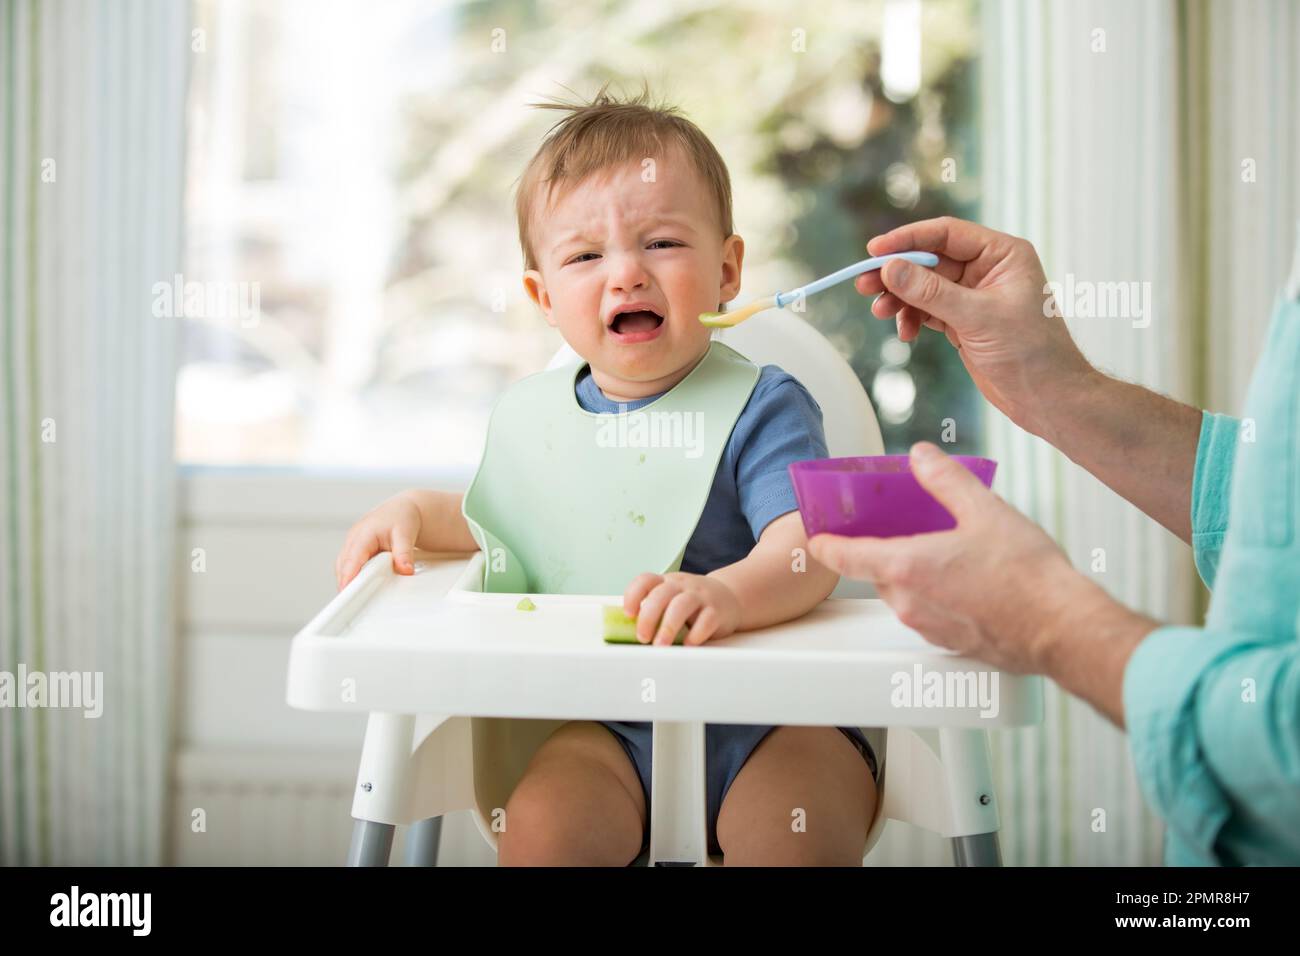 Père nourrissant son bébé mignon avec la première nourriture solide, bébé assis dans une chaise haute. L'enfant ne veut pas manger, refuse de manger, fait des visages. Cuisine confortable Banque D'Images